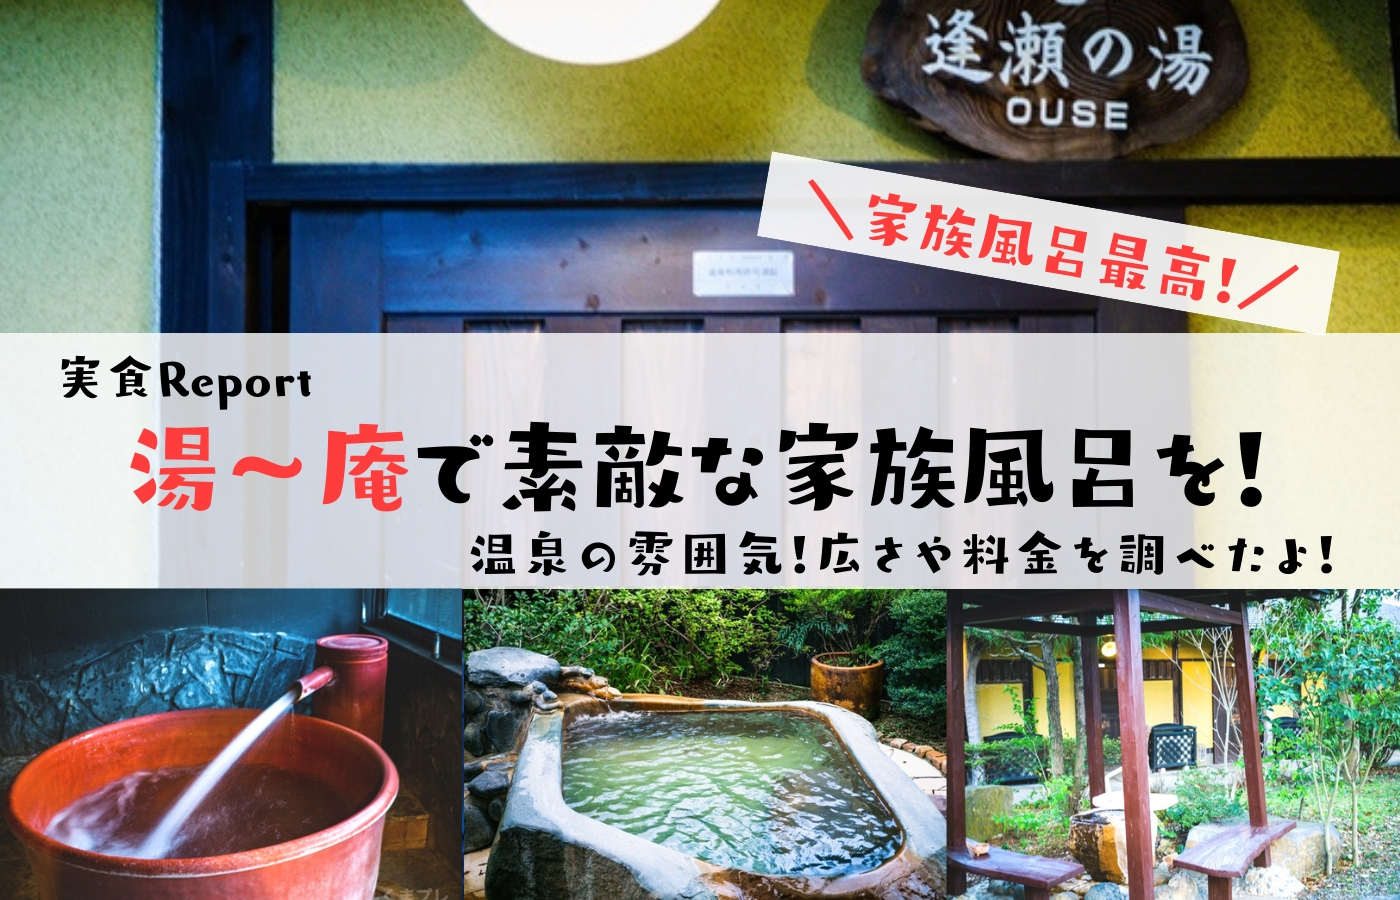 温泉邸 湯 庵 ゆうあん の家族風呂最高 ご飯も食べられる素敵な温泉スポット 熊本プレイス